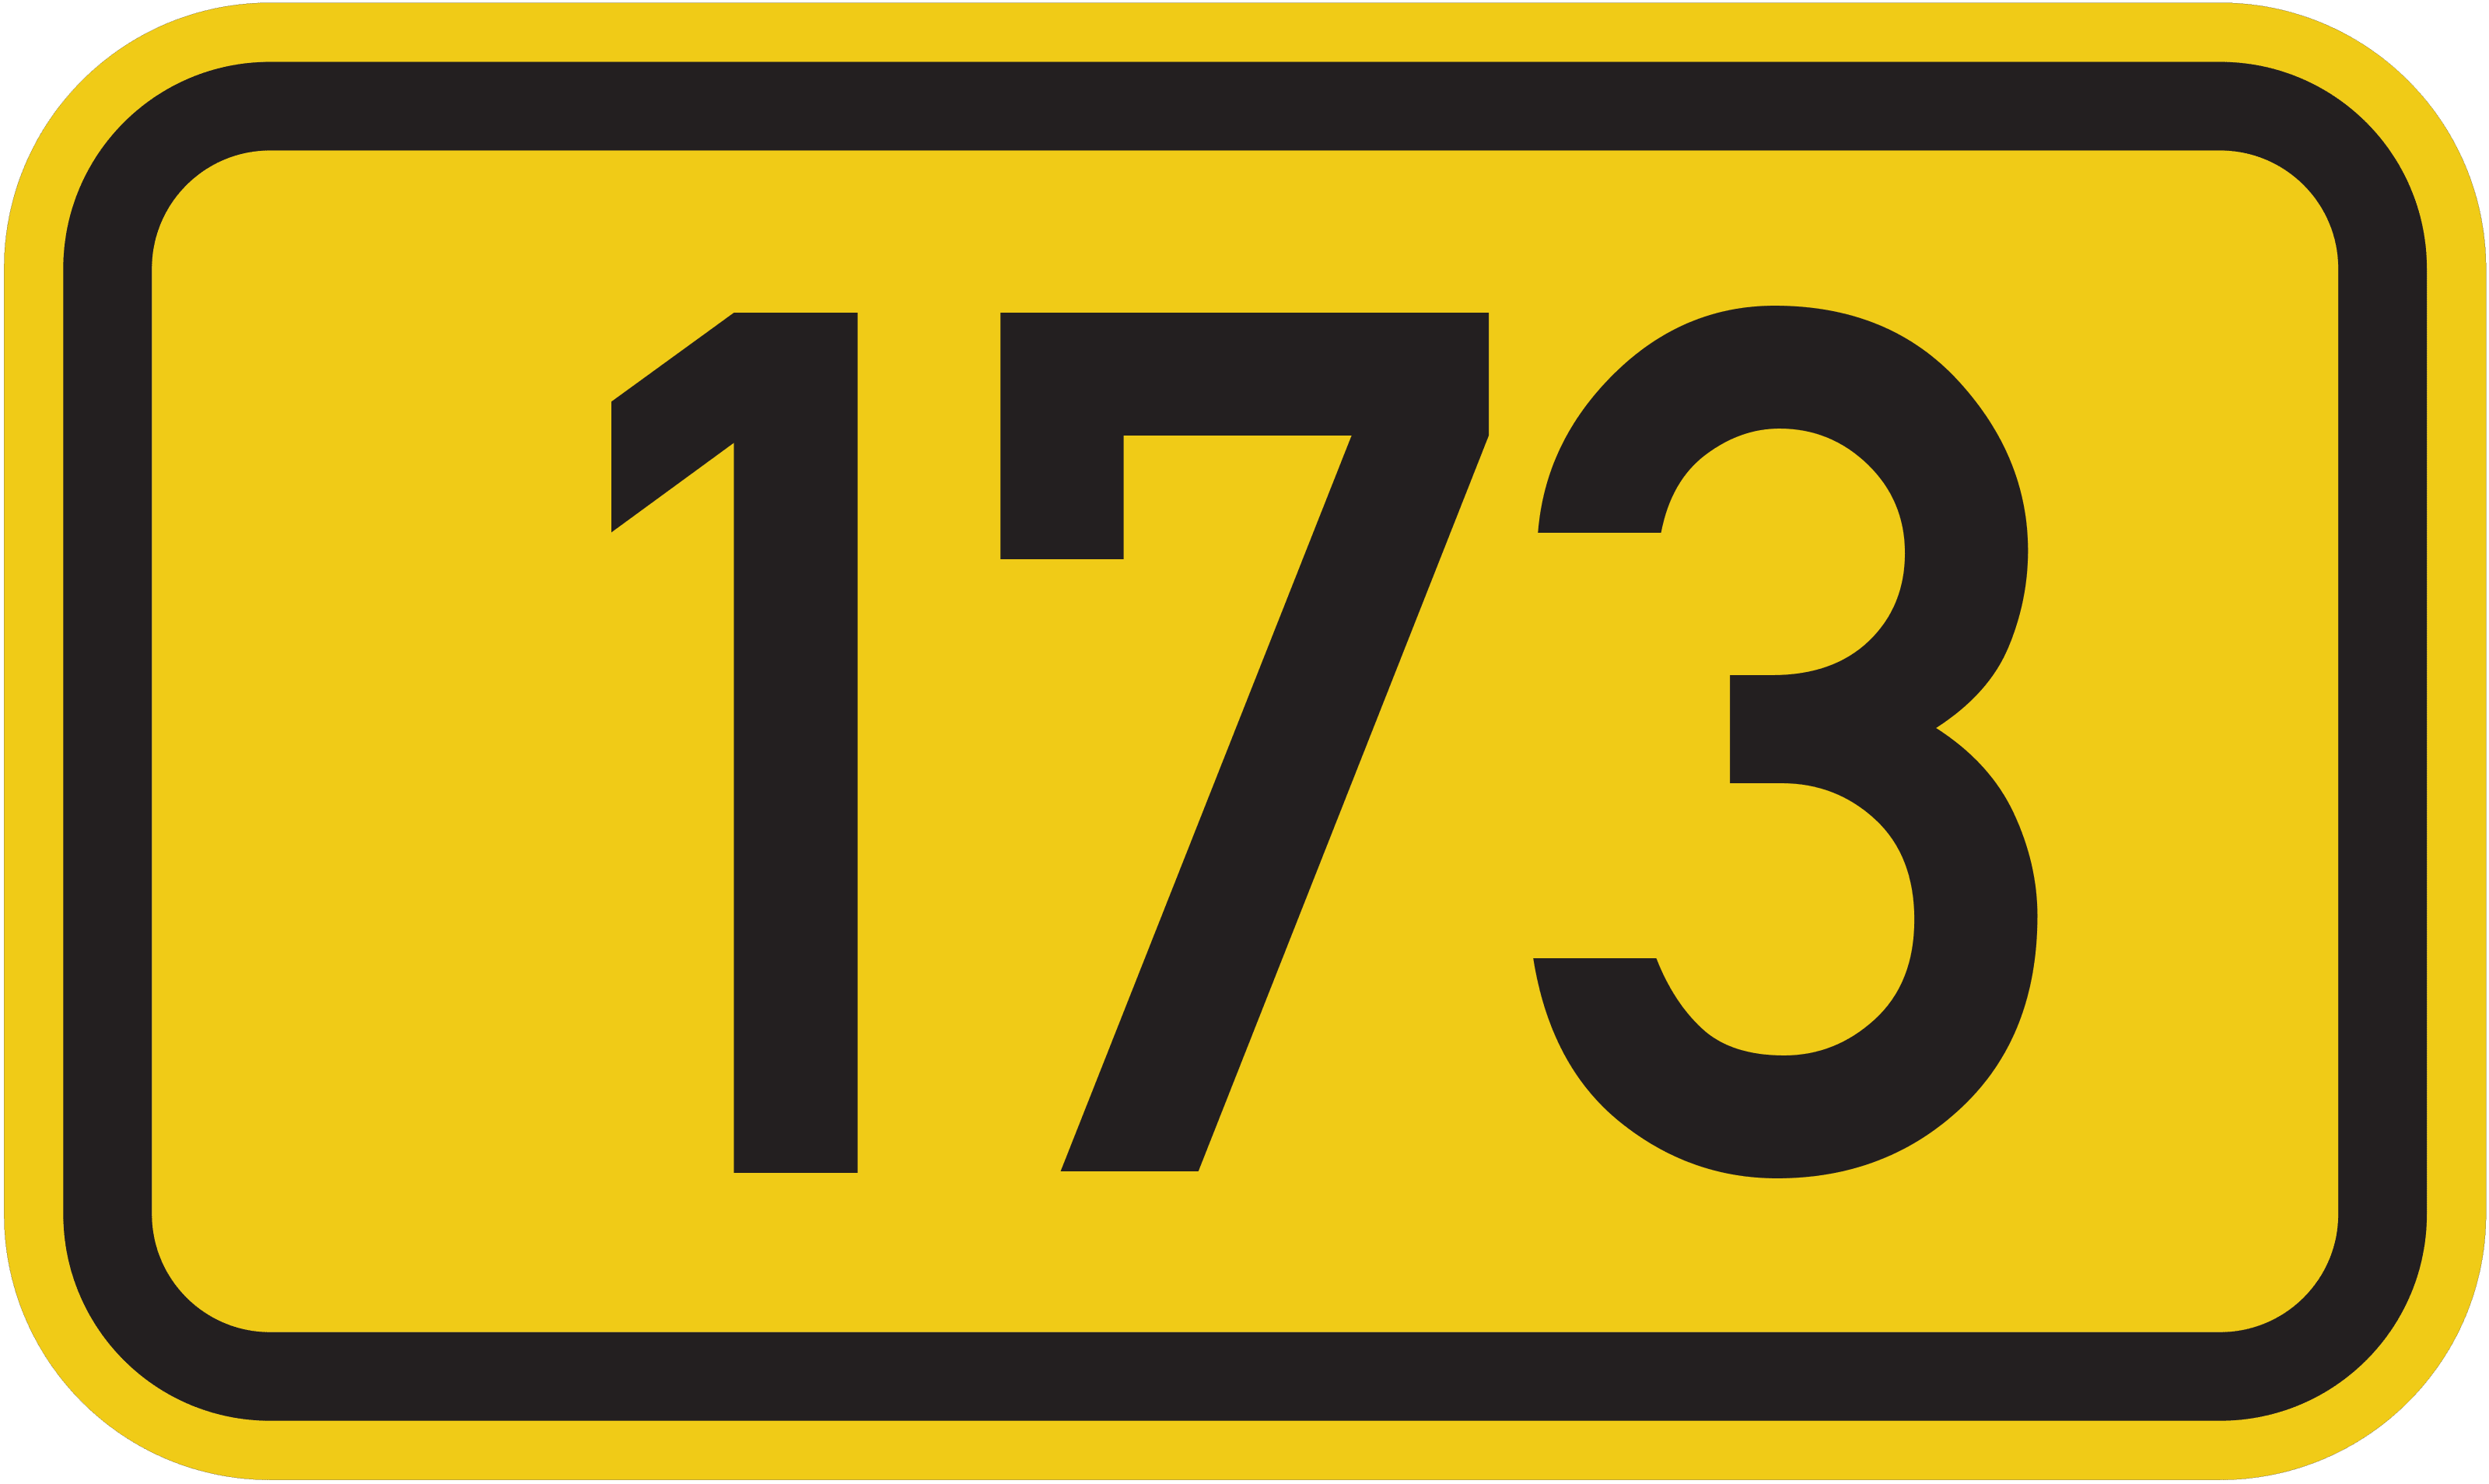 Bundesstraße B 173